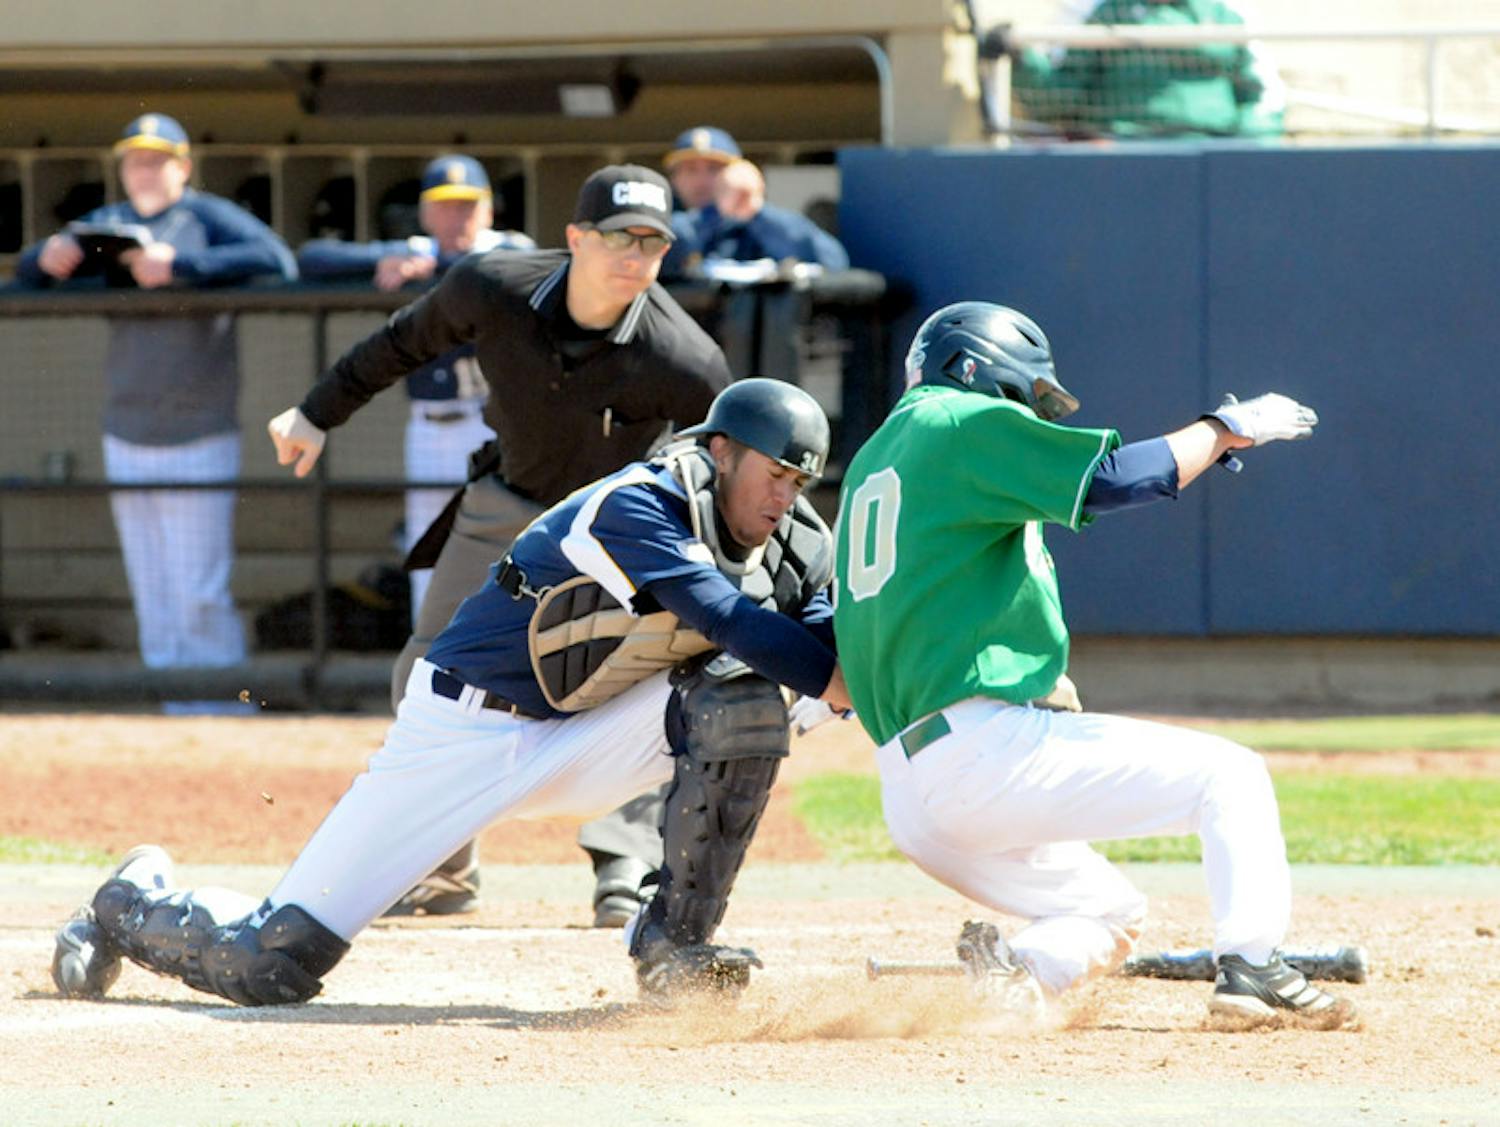 20130421-Baseball-vs-Quinnipac-Biggio-Ally-Darragh